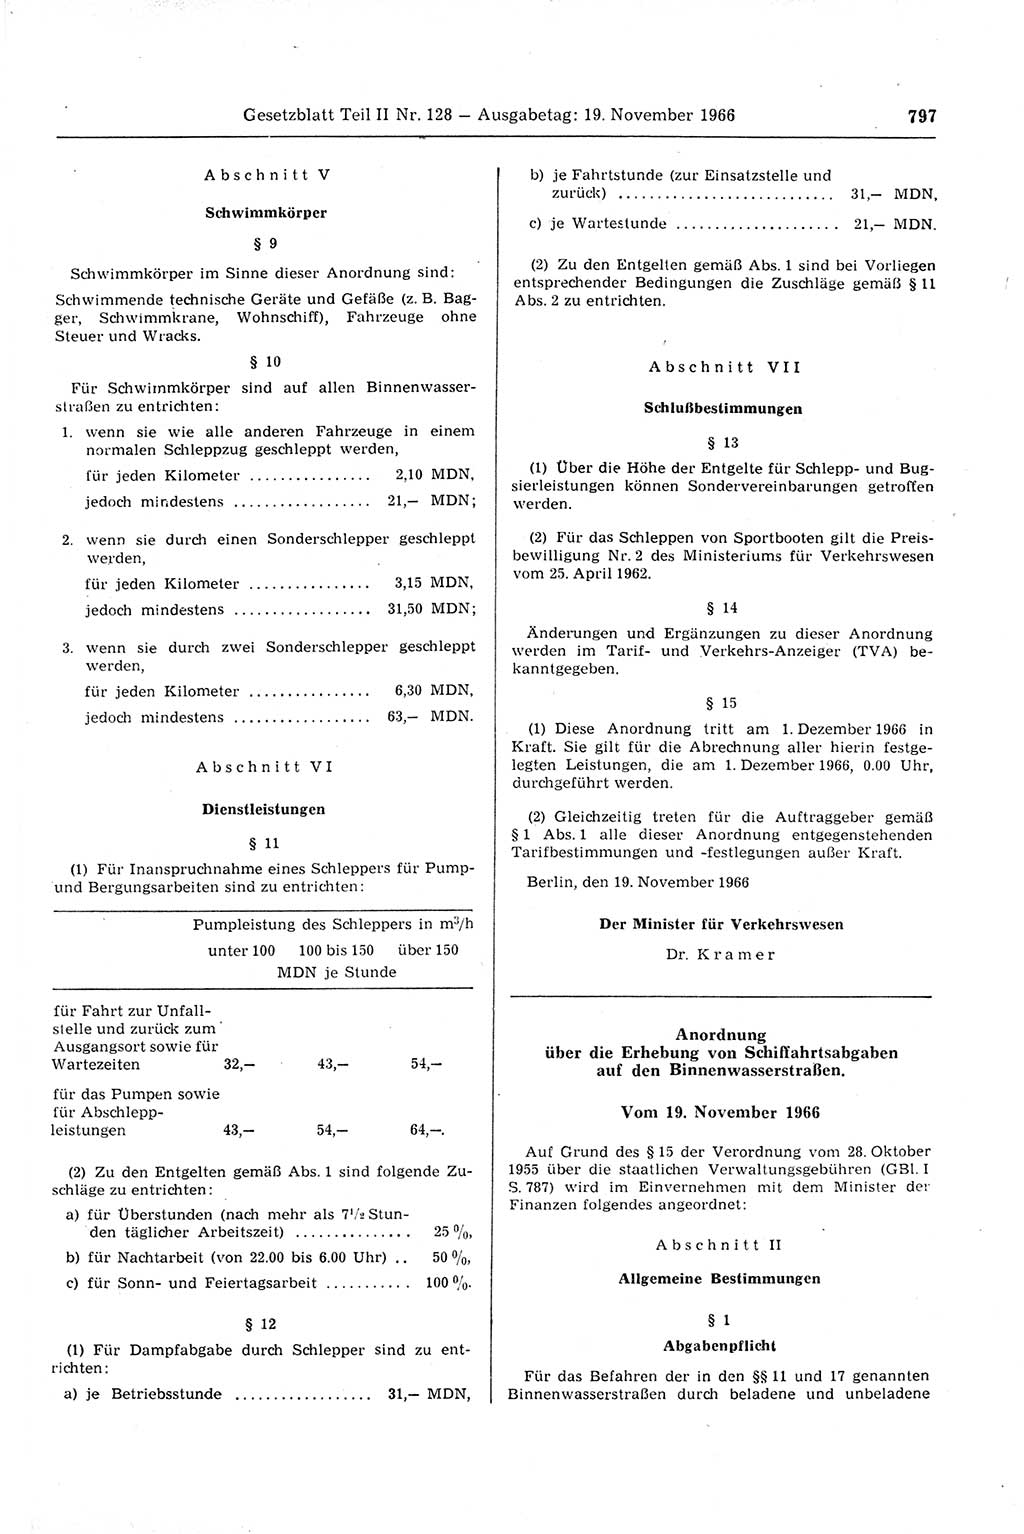 Gesetzblatt (GBl.) der Deutschen Demokratischen Republik (DDR) Teil ⅠⅠ 1966, Seite 797 (GBl. DDR ⅠⅠ 1966, S. 797)